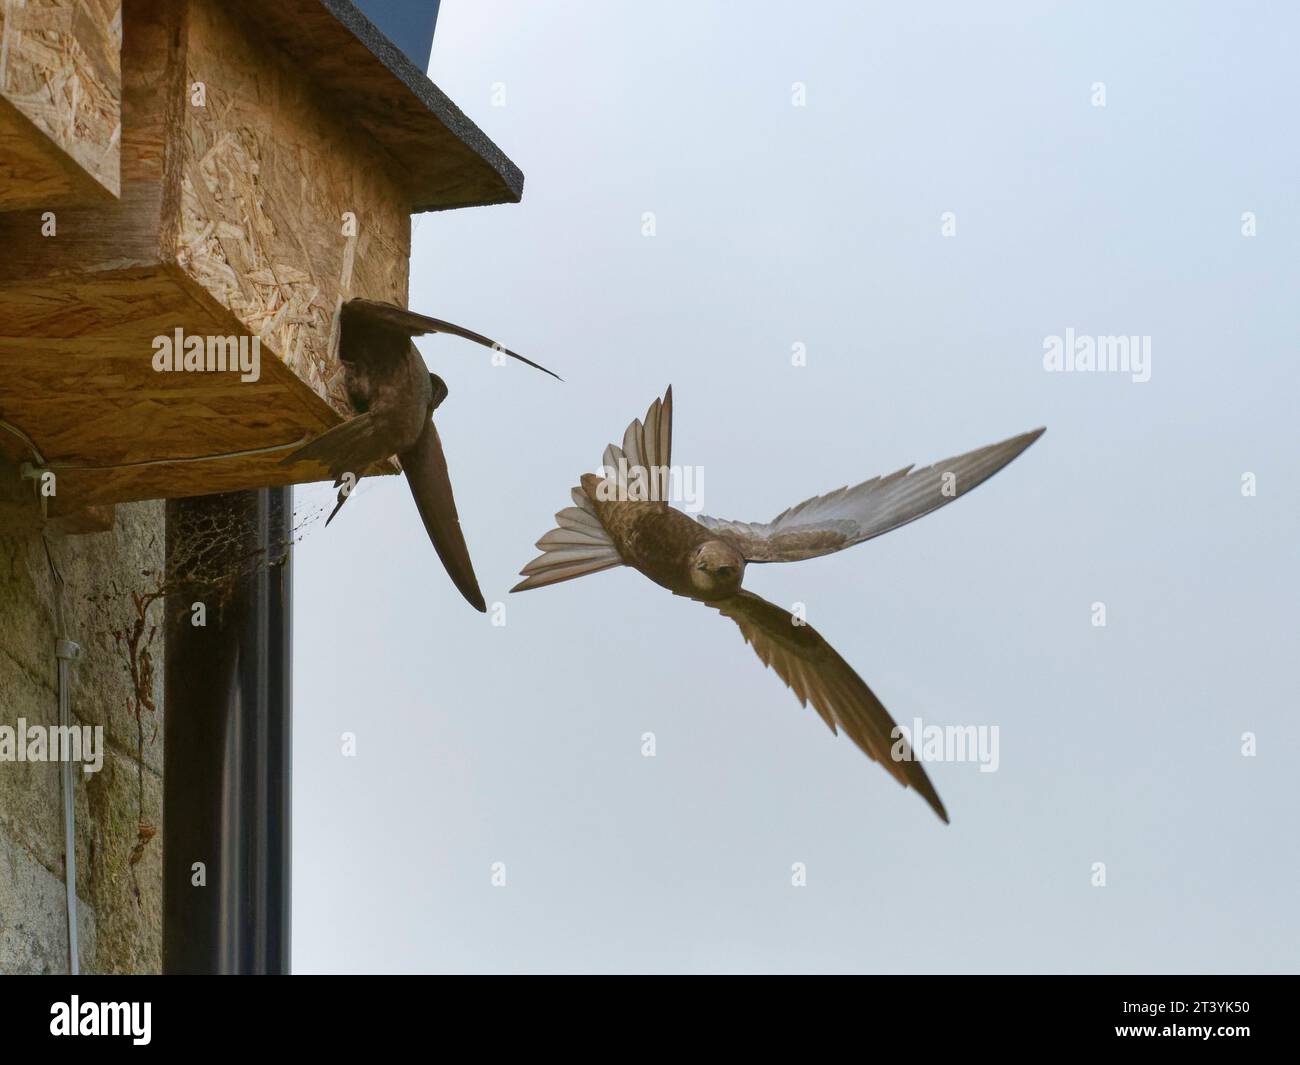 Common Swift (Apus apu) giovane adulto, atterra brevemente o "banging" per ispezionare un nido di box mentre il suo compagno freni pneumatici nelle vicinanze, Wiltshire, Inghilterra, Regno Unito, giugno. Foto Stock